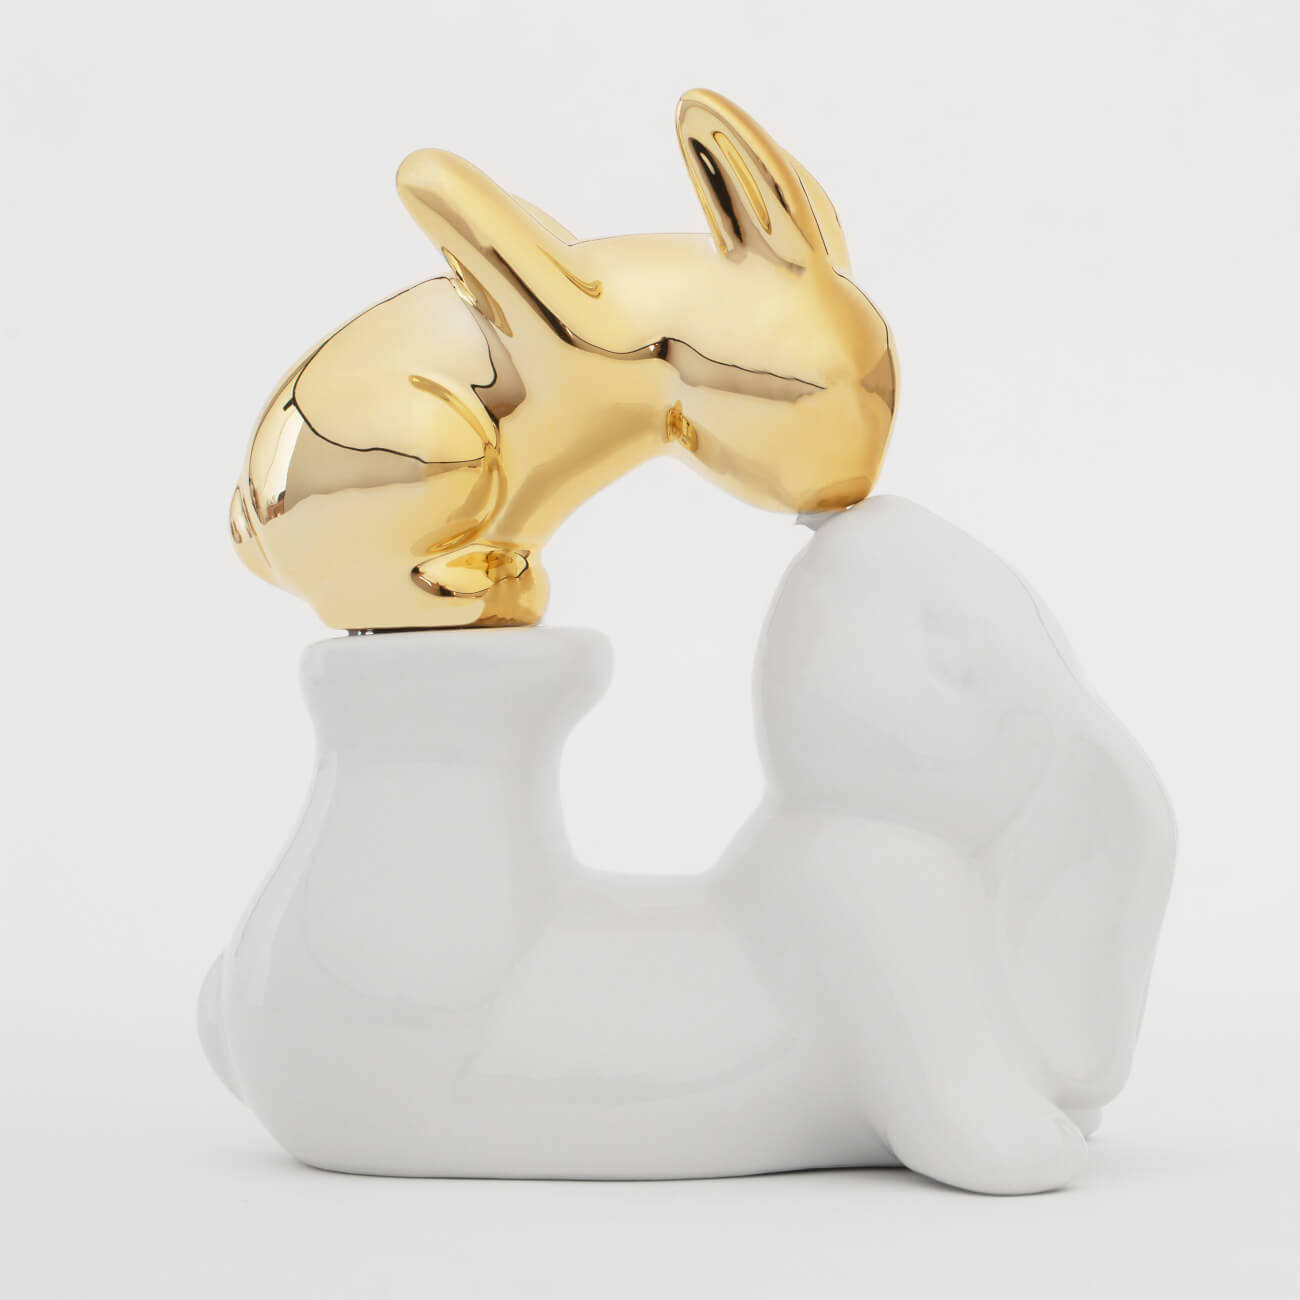 Статуэтка, 14 см, керамика, бело-золотистая, Крольчиха и крольчонок, Easter gold статуэтка 13 см керамика бело золотистая кролик сидит easter gold